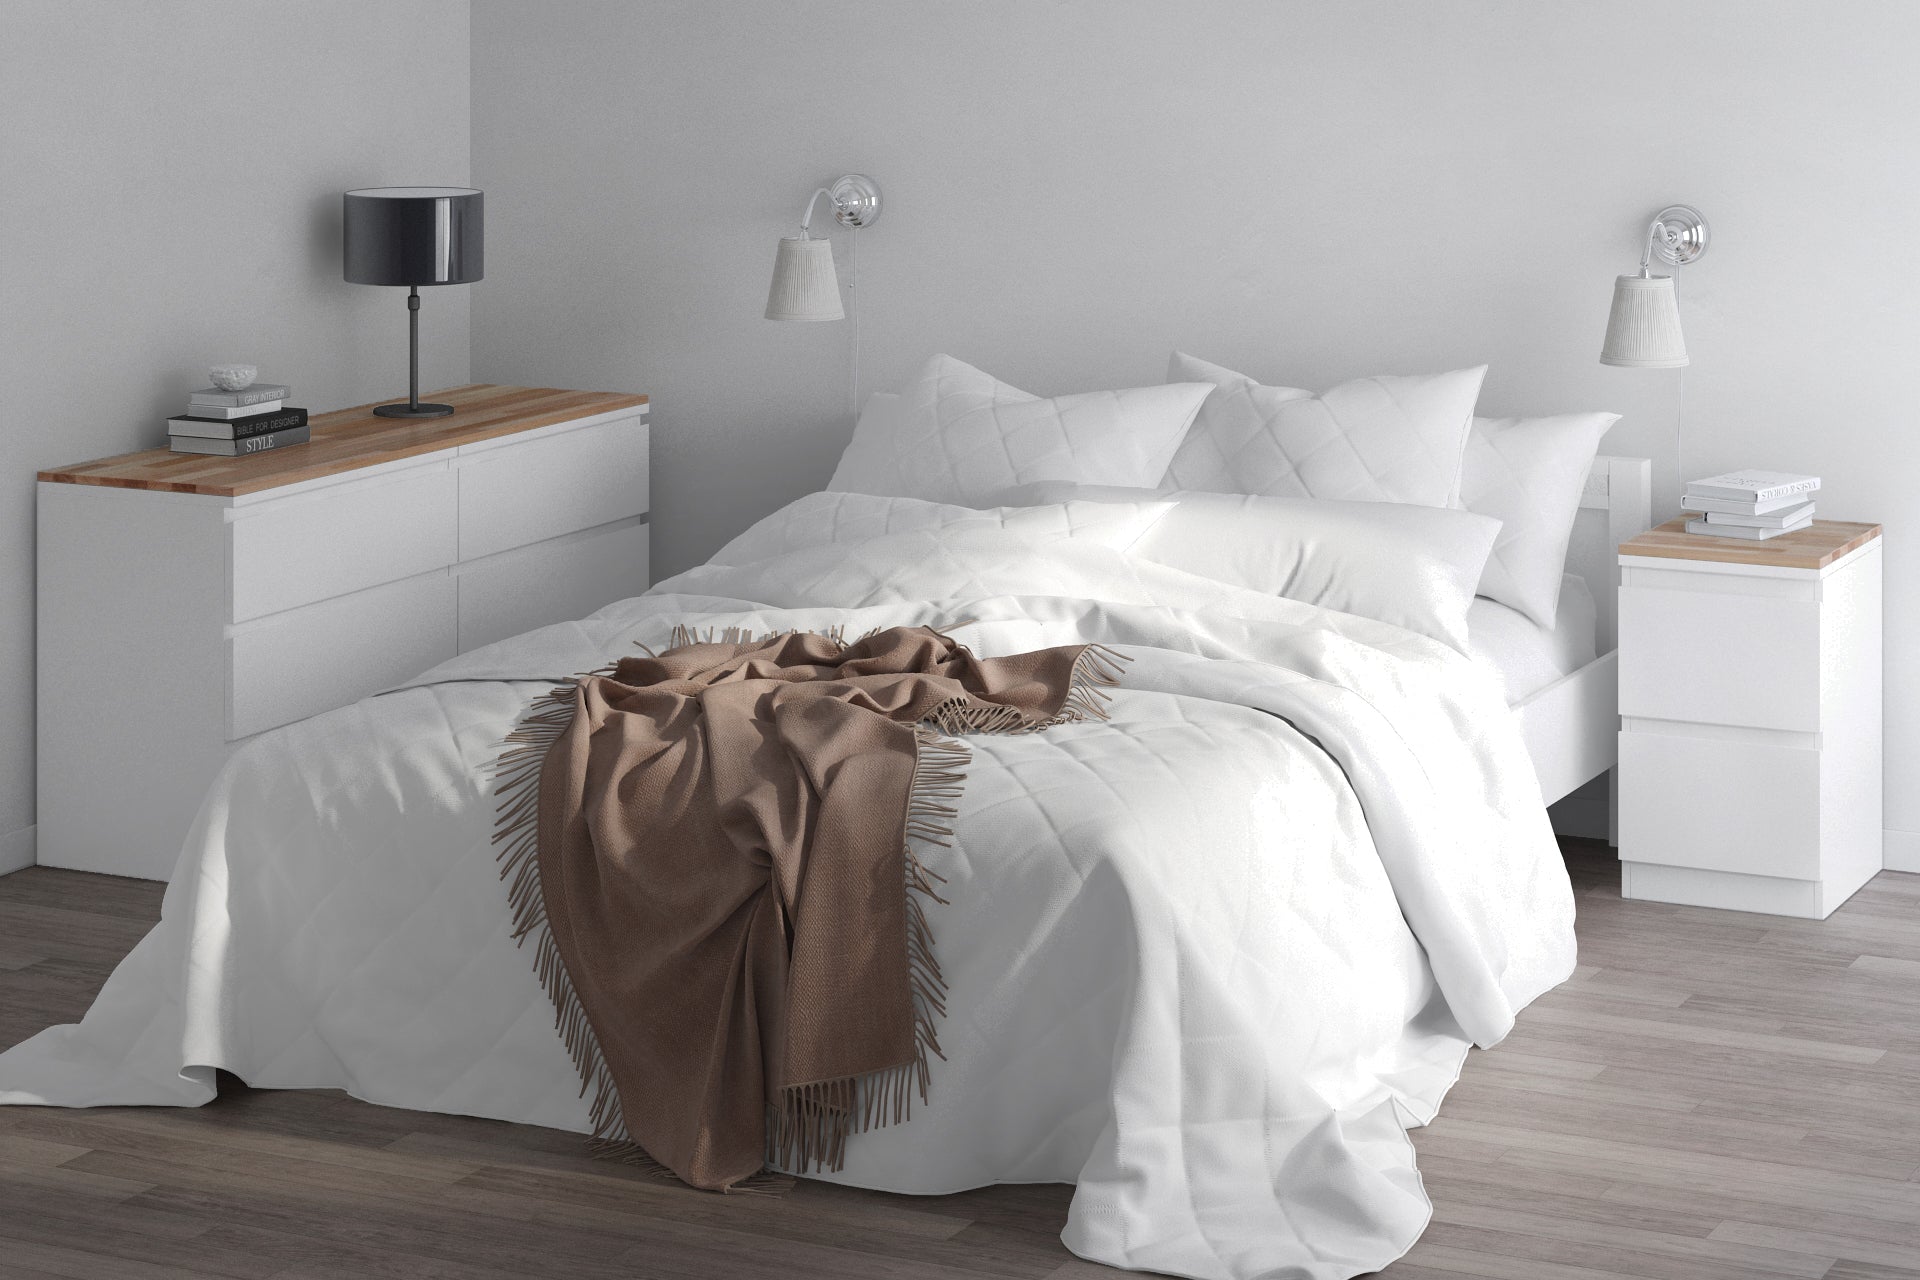 malm holzplatte: dein schlafzimmer im angesagten scandi style – hokea